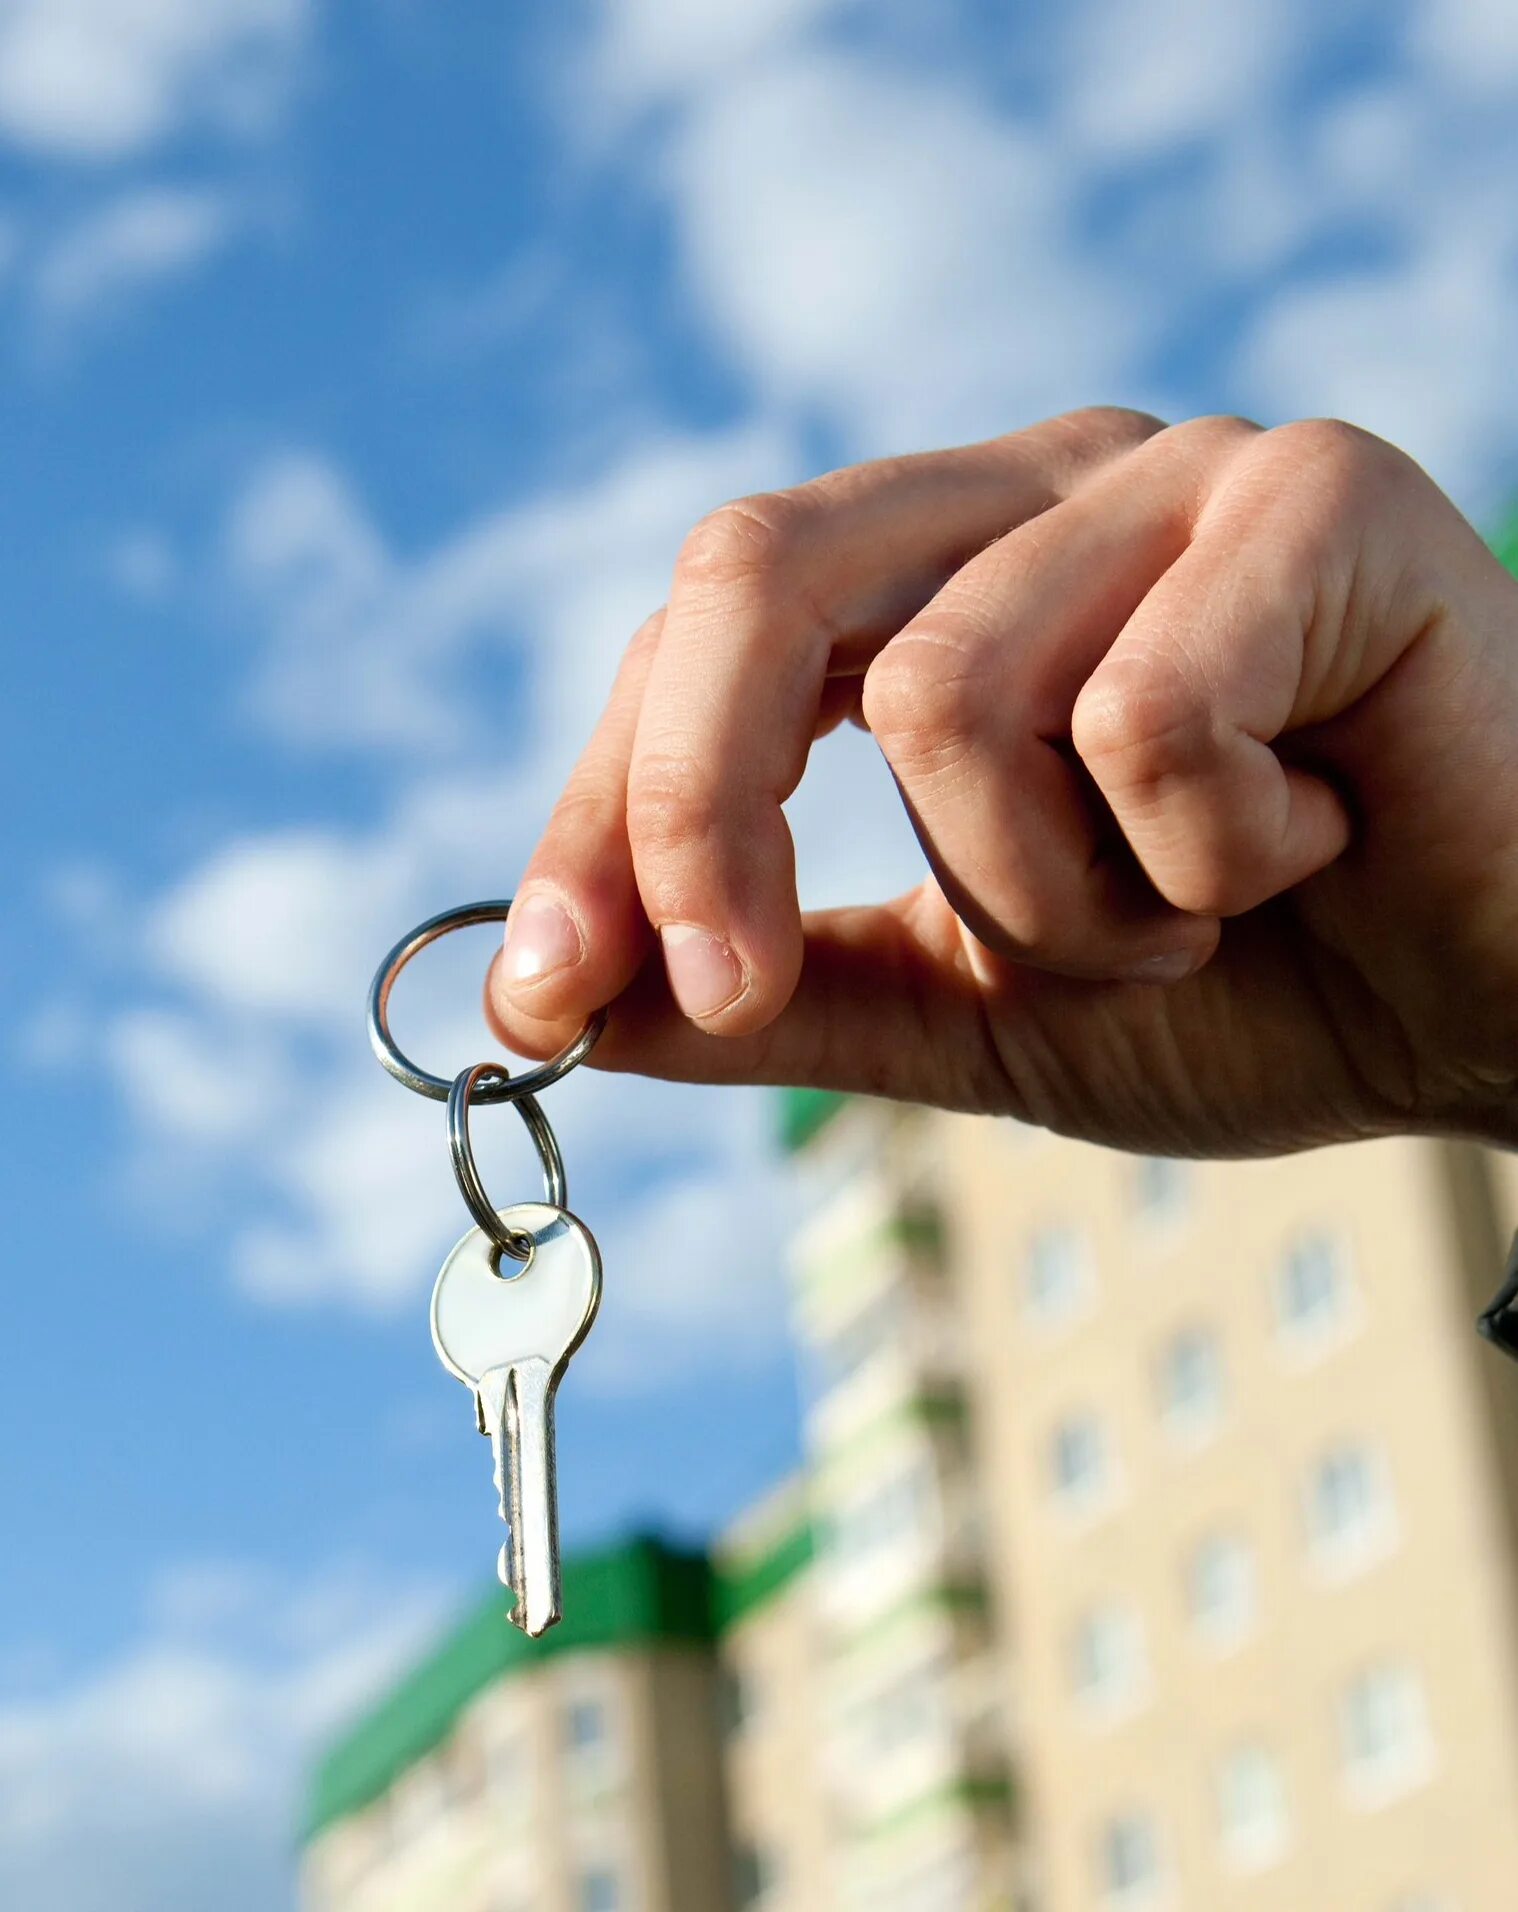 Организация снимет квартиры. Ключи от квартиры. Квартира ключи. Ключи от квартиры в руке. Жилье.